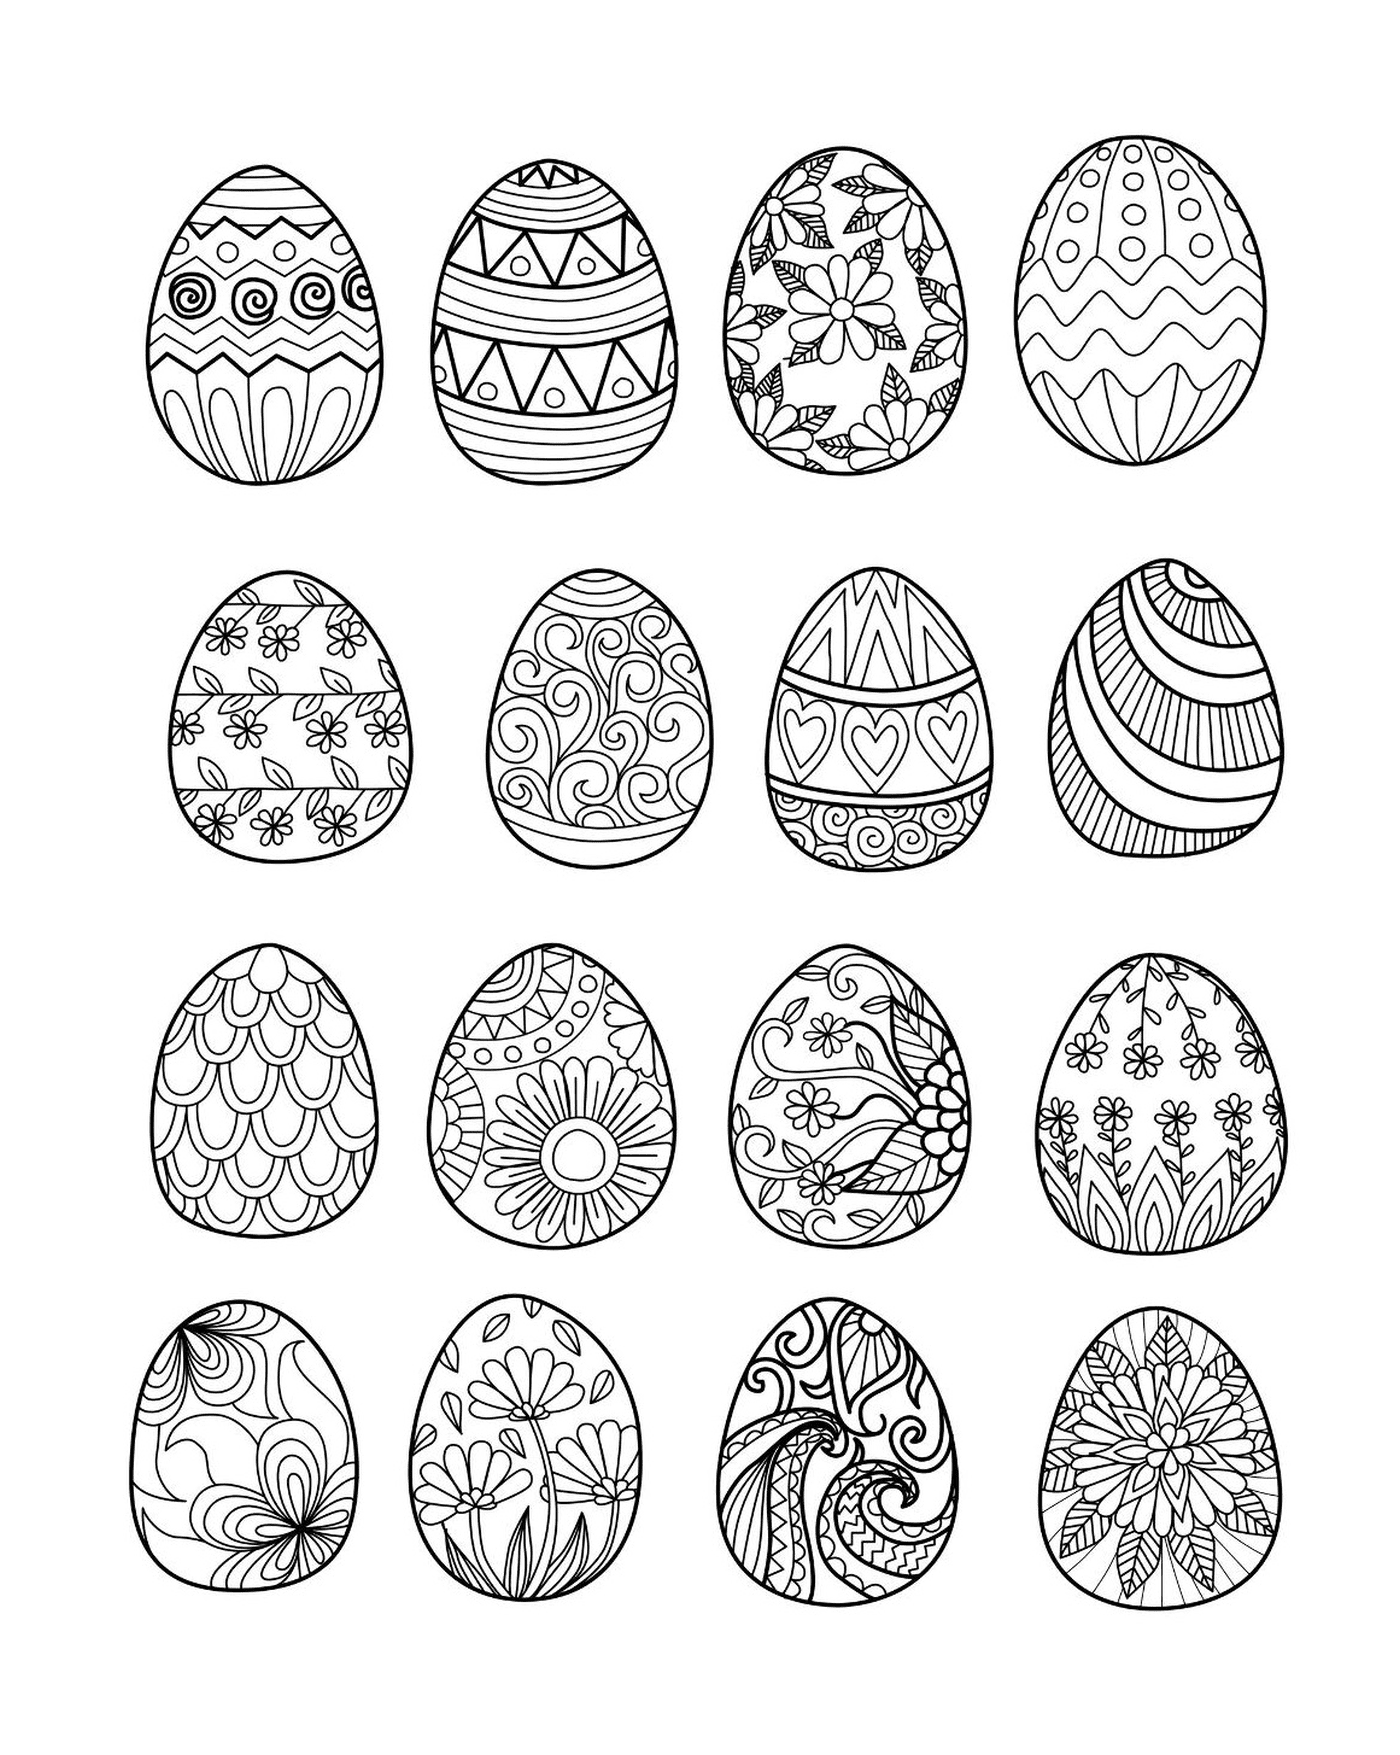  6 Eier zusammen 